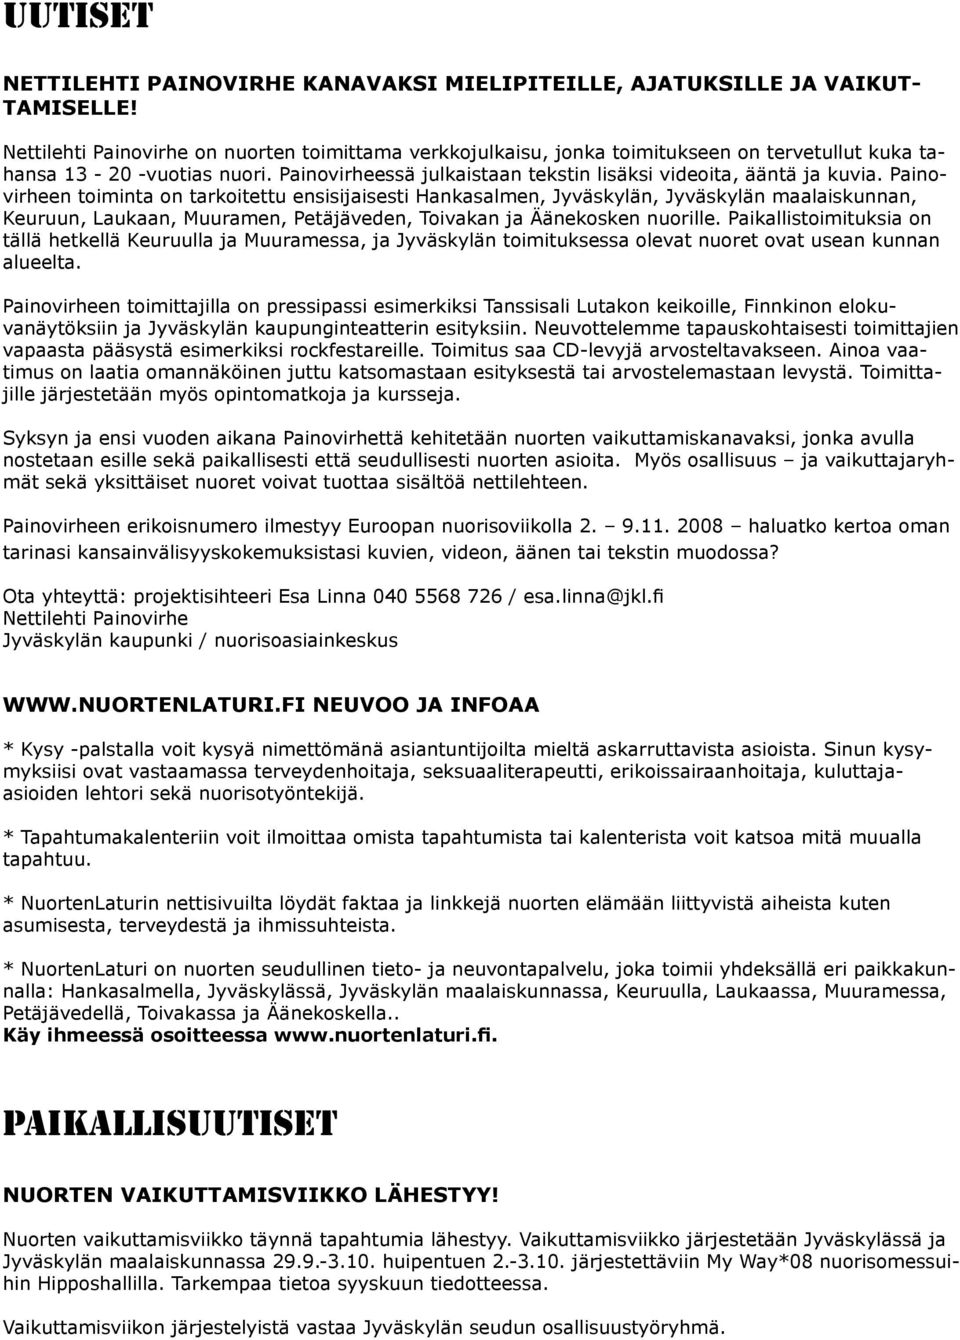 Painovirheen toiminta on tarkoitettu ensisijaisesti Hankasalmen, Jyväskylän, Jyväskylän maalaiskunnan, Keuruun, Laukaan, Muuramen, Petäjäveden, Toivakan ja Äänekosken nuorille.